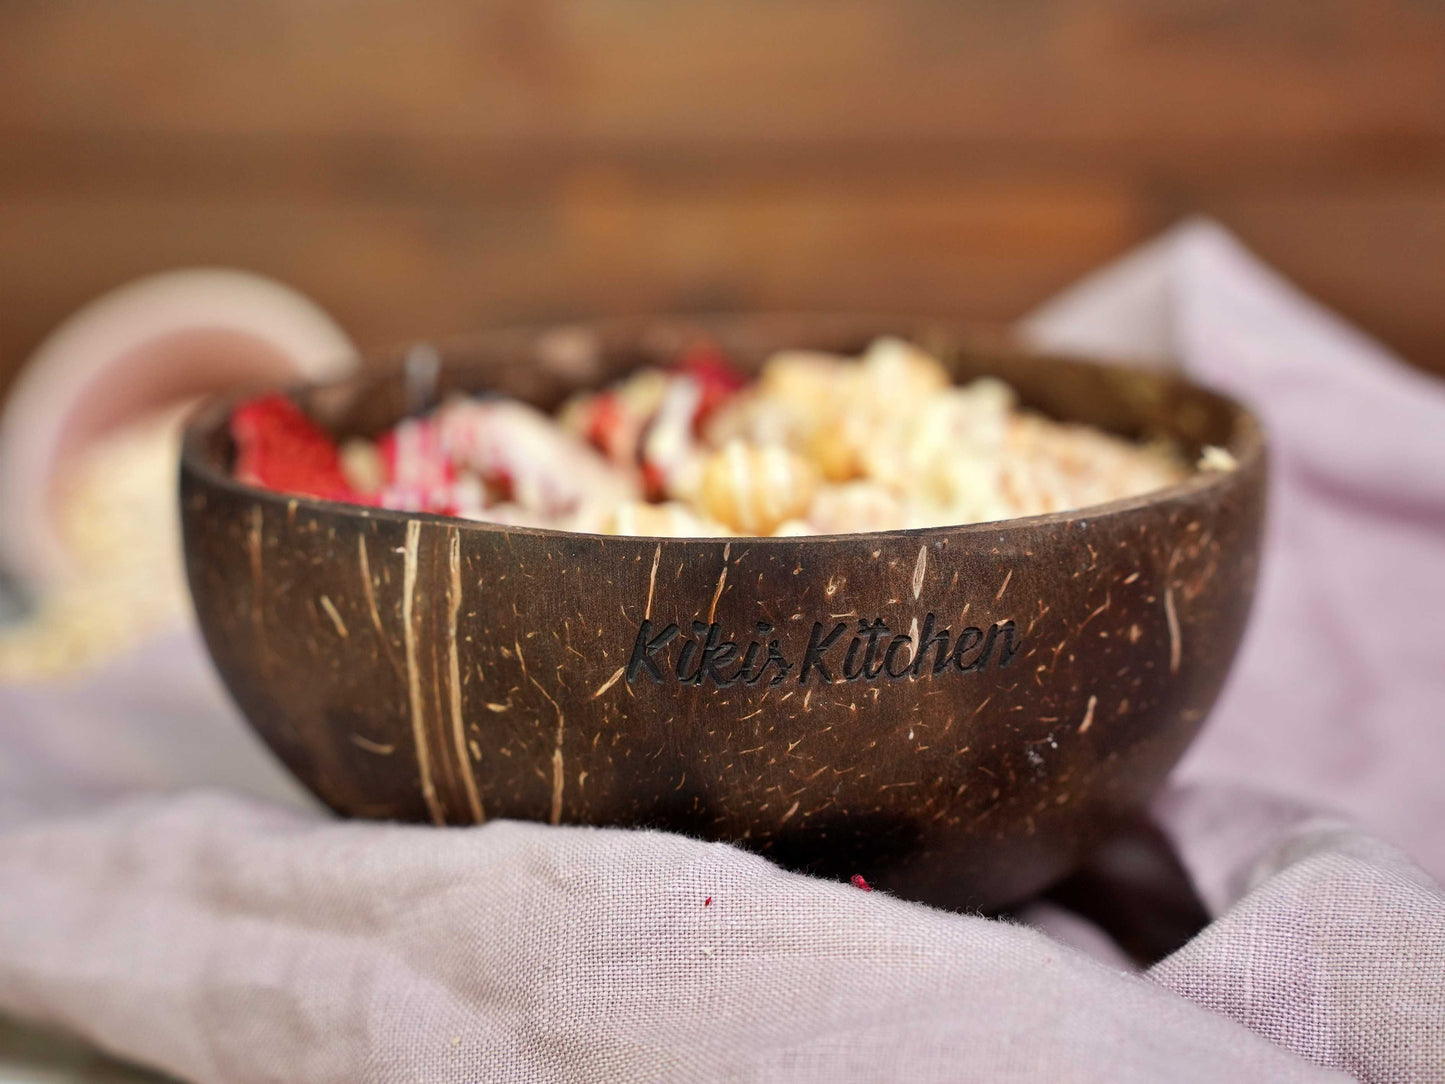 Kikis Kokosschale - Bowlschale -  von Kikis Kitchen - Nur €5.90! Bestelle jetzt Kikis Kitchen